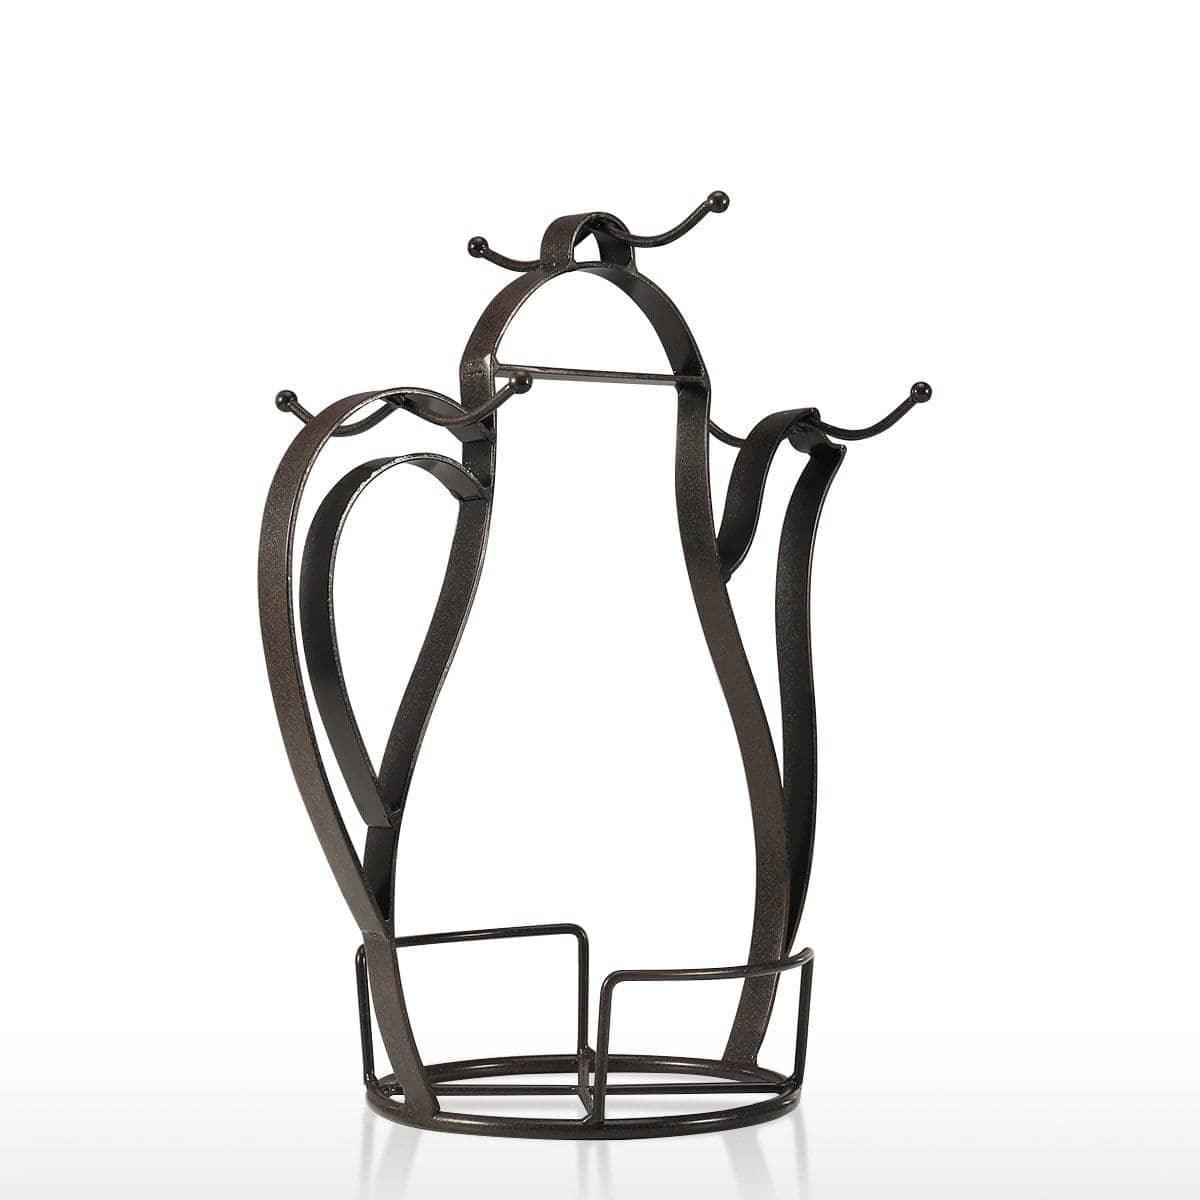 Kettle Love Coffee Mug Holder Stand: StylishKitchen Accessory